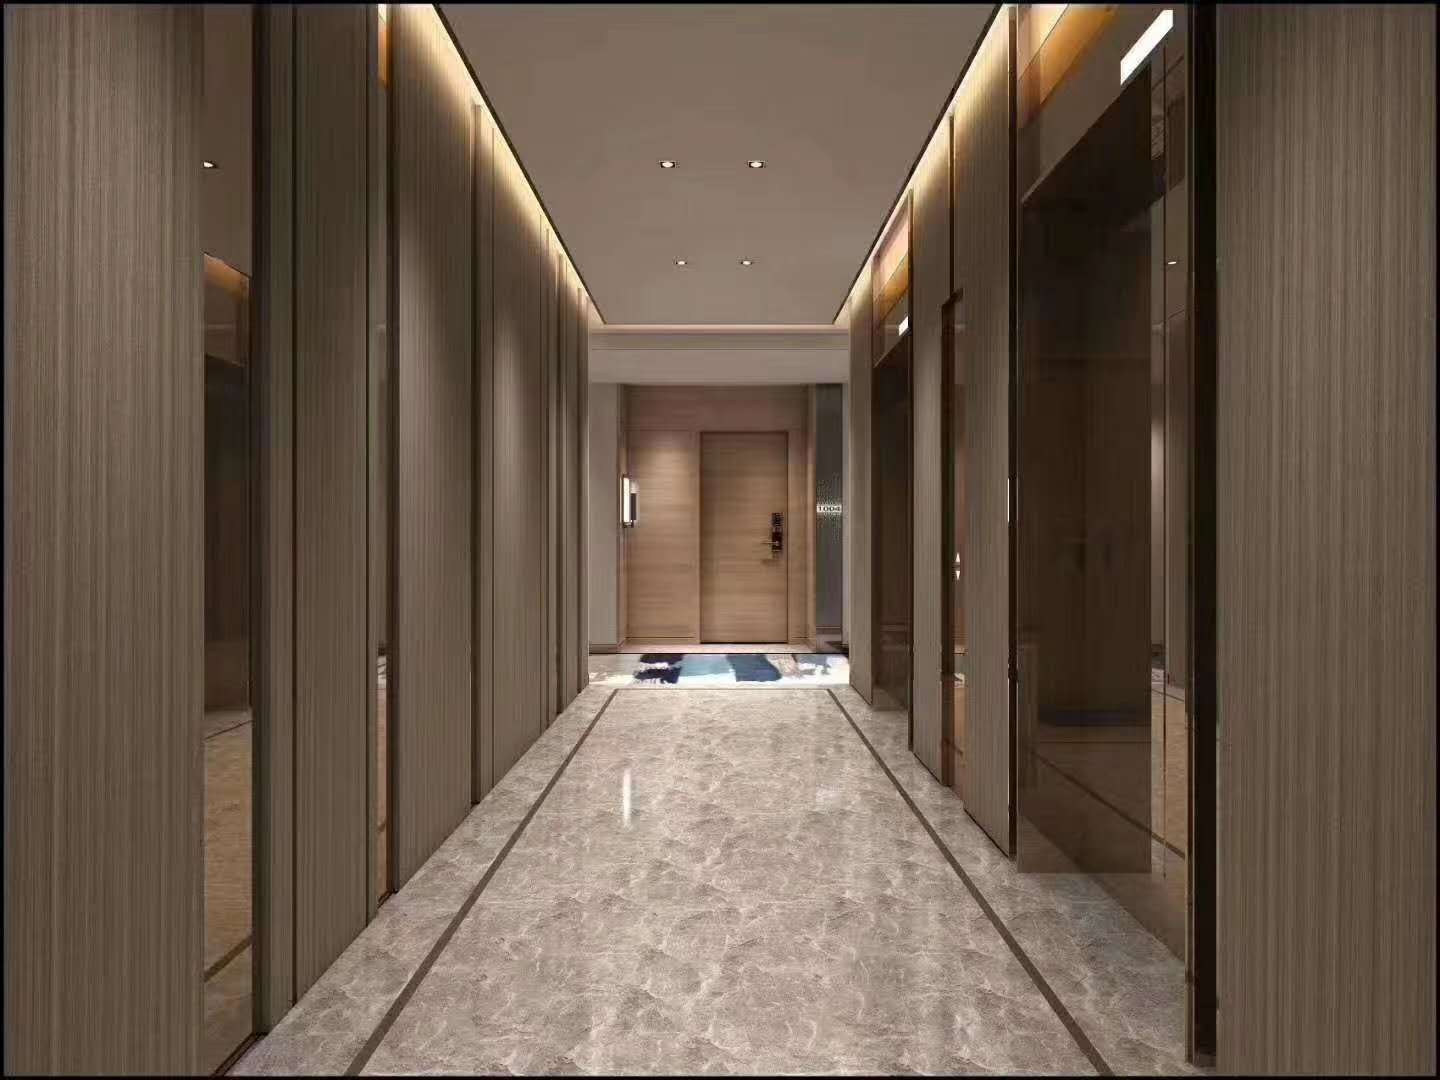 现代风格明珠客厅镂空隔断装修效果图 – 设计本装修效果图